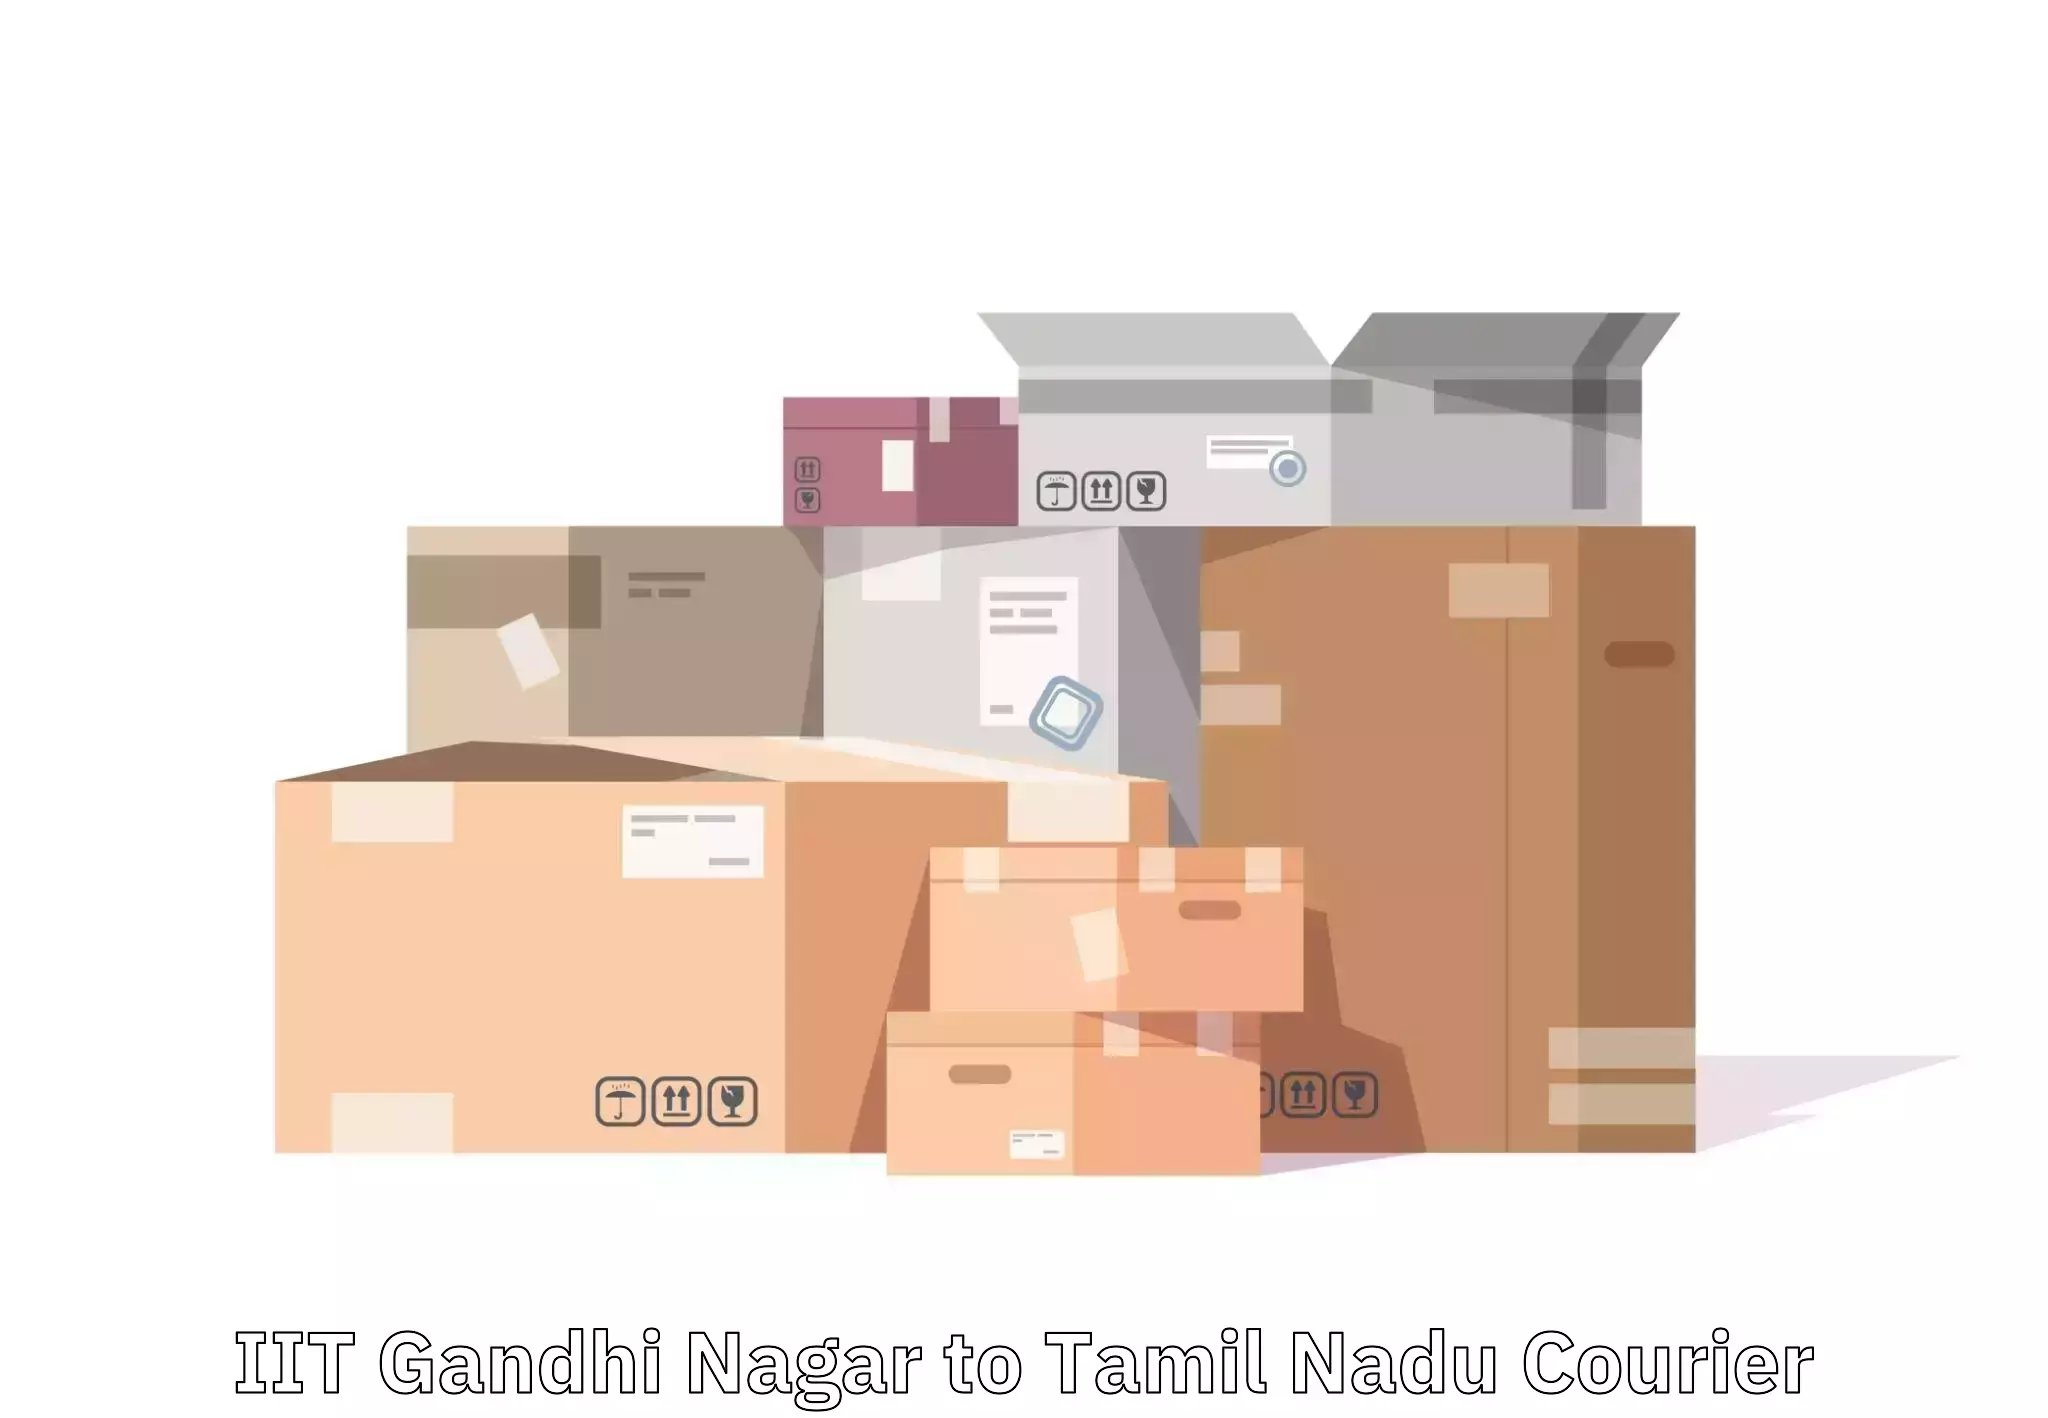 Emergency baggage service IIT Gandhi Nagar to Thuckalay